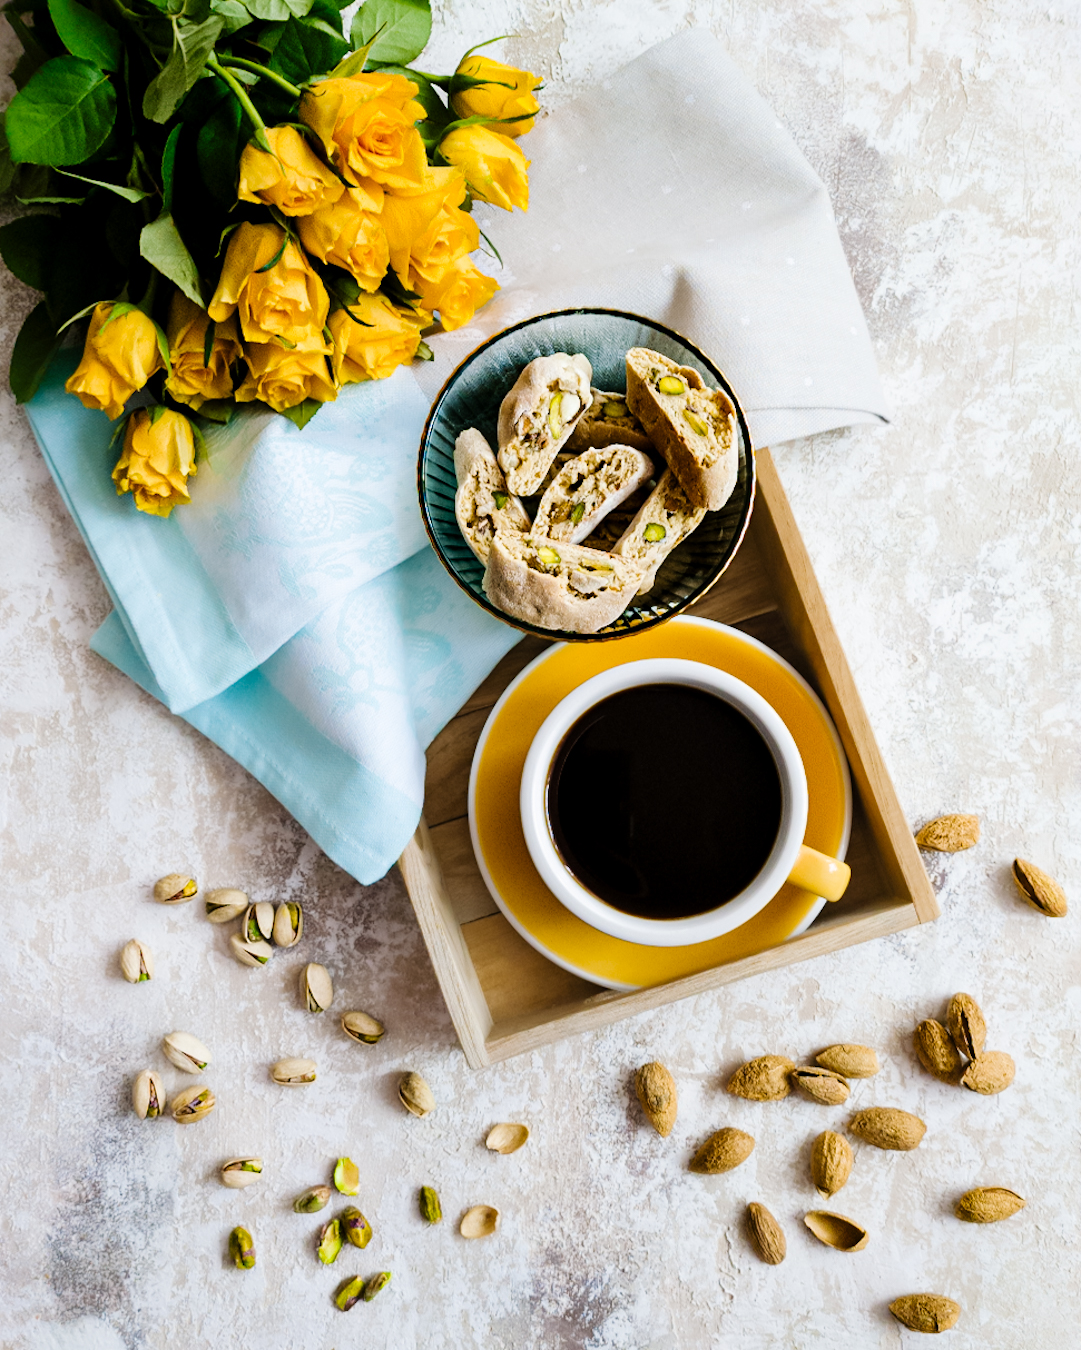 Miseczka z cantuccini w towarzystwie kawy w żółtej filiżance i żółtych róż. W tle pistacje i migdały - widok z góry.